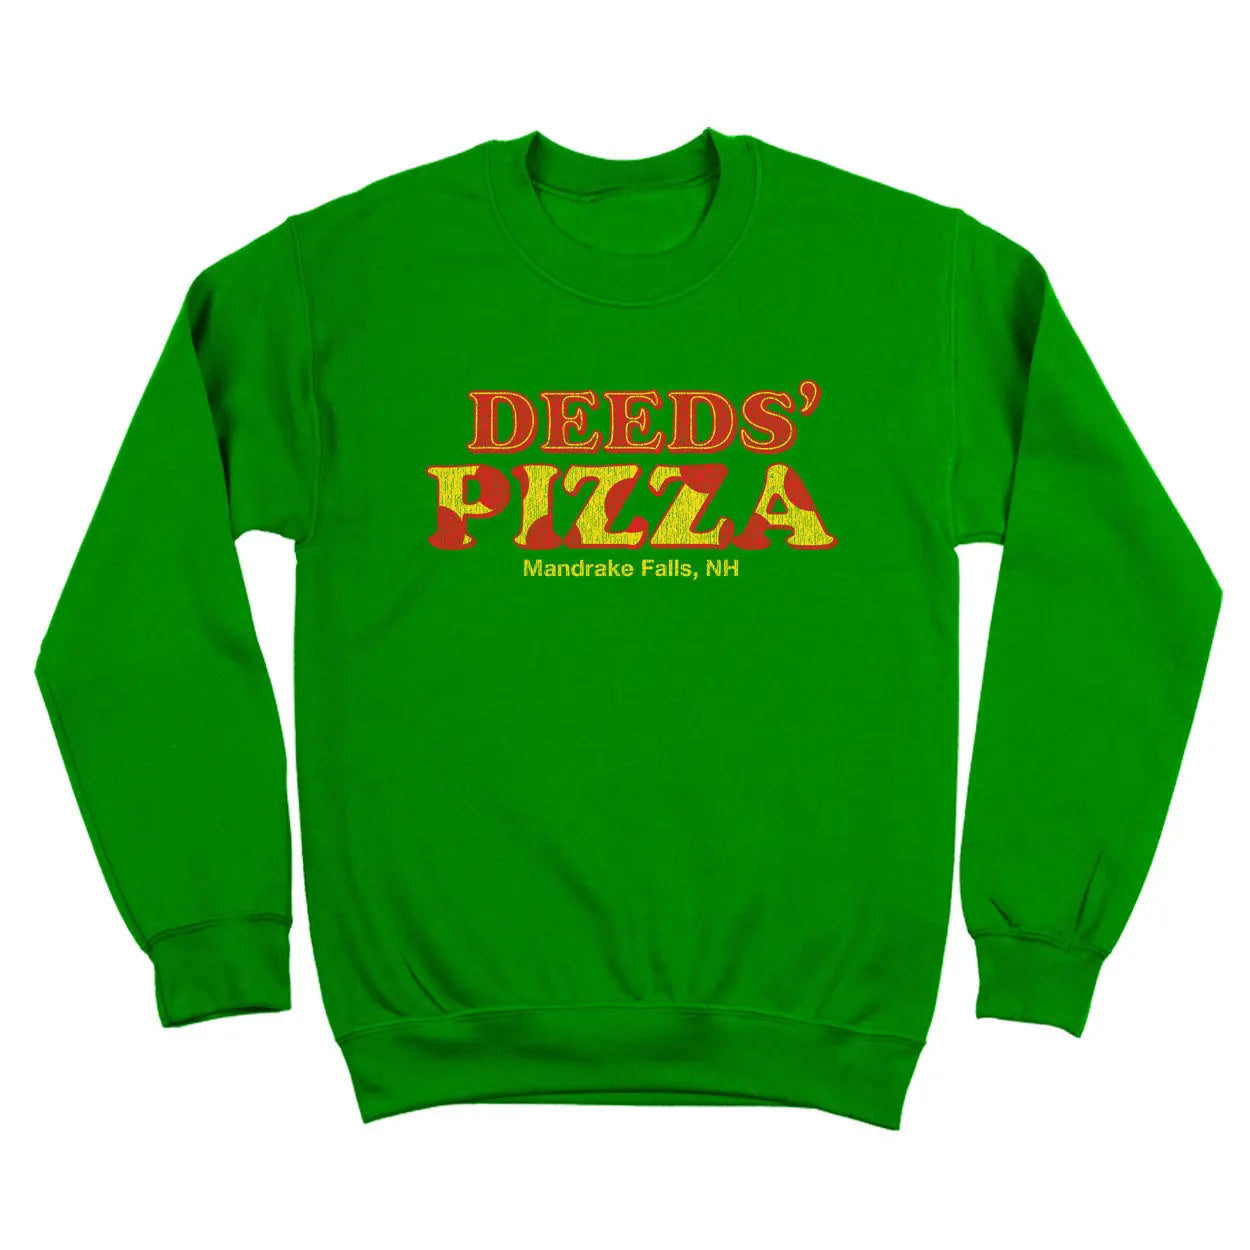 Deed's Pizza Shop Tshirt - Donkey Tees